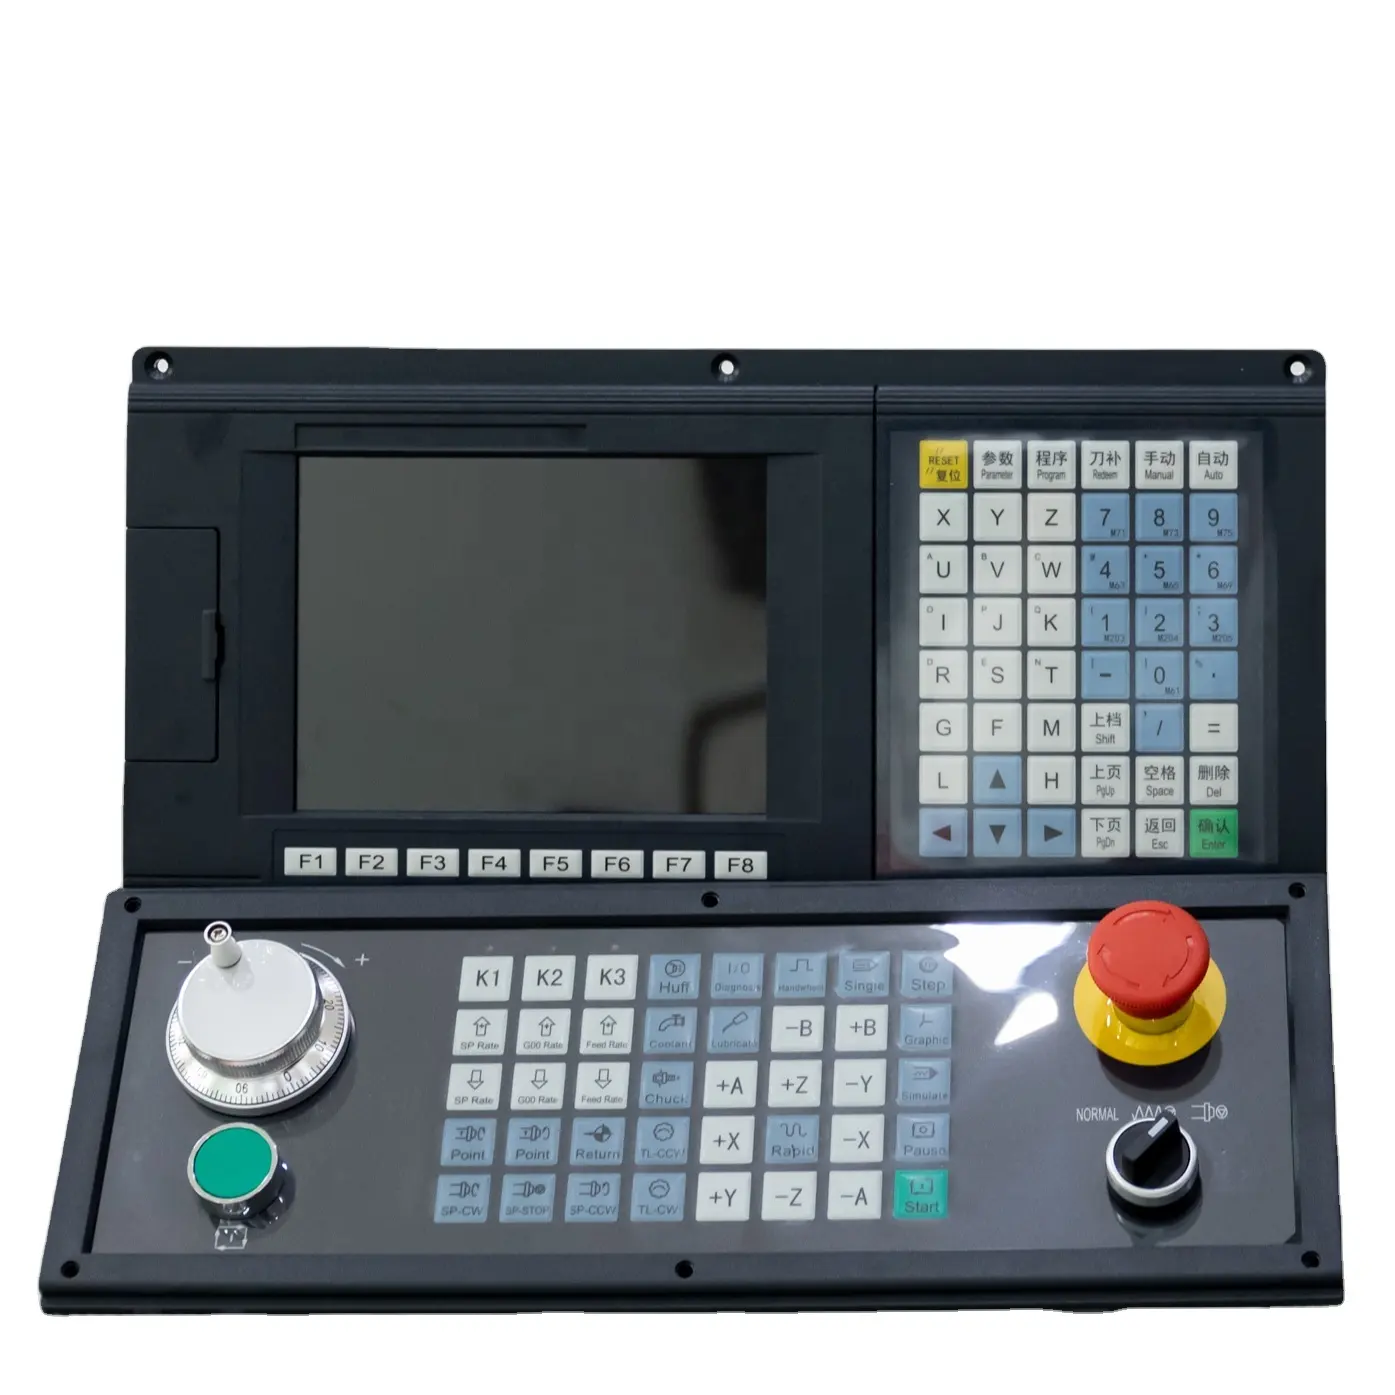 NEWKer-tarjeta controladora cnc de 2, 3 y 4 ejes para máquina de grabado, con PLC Mitsubishi